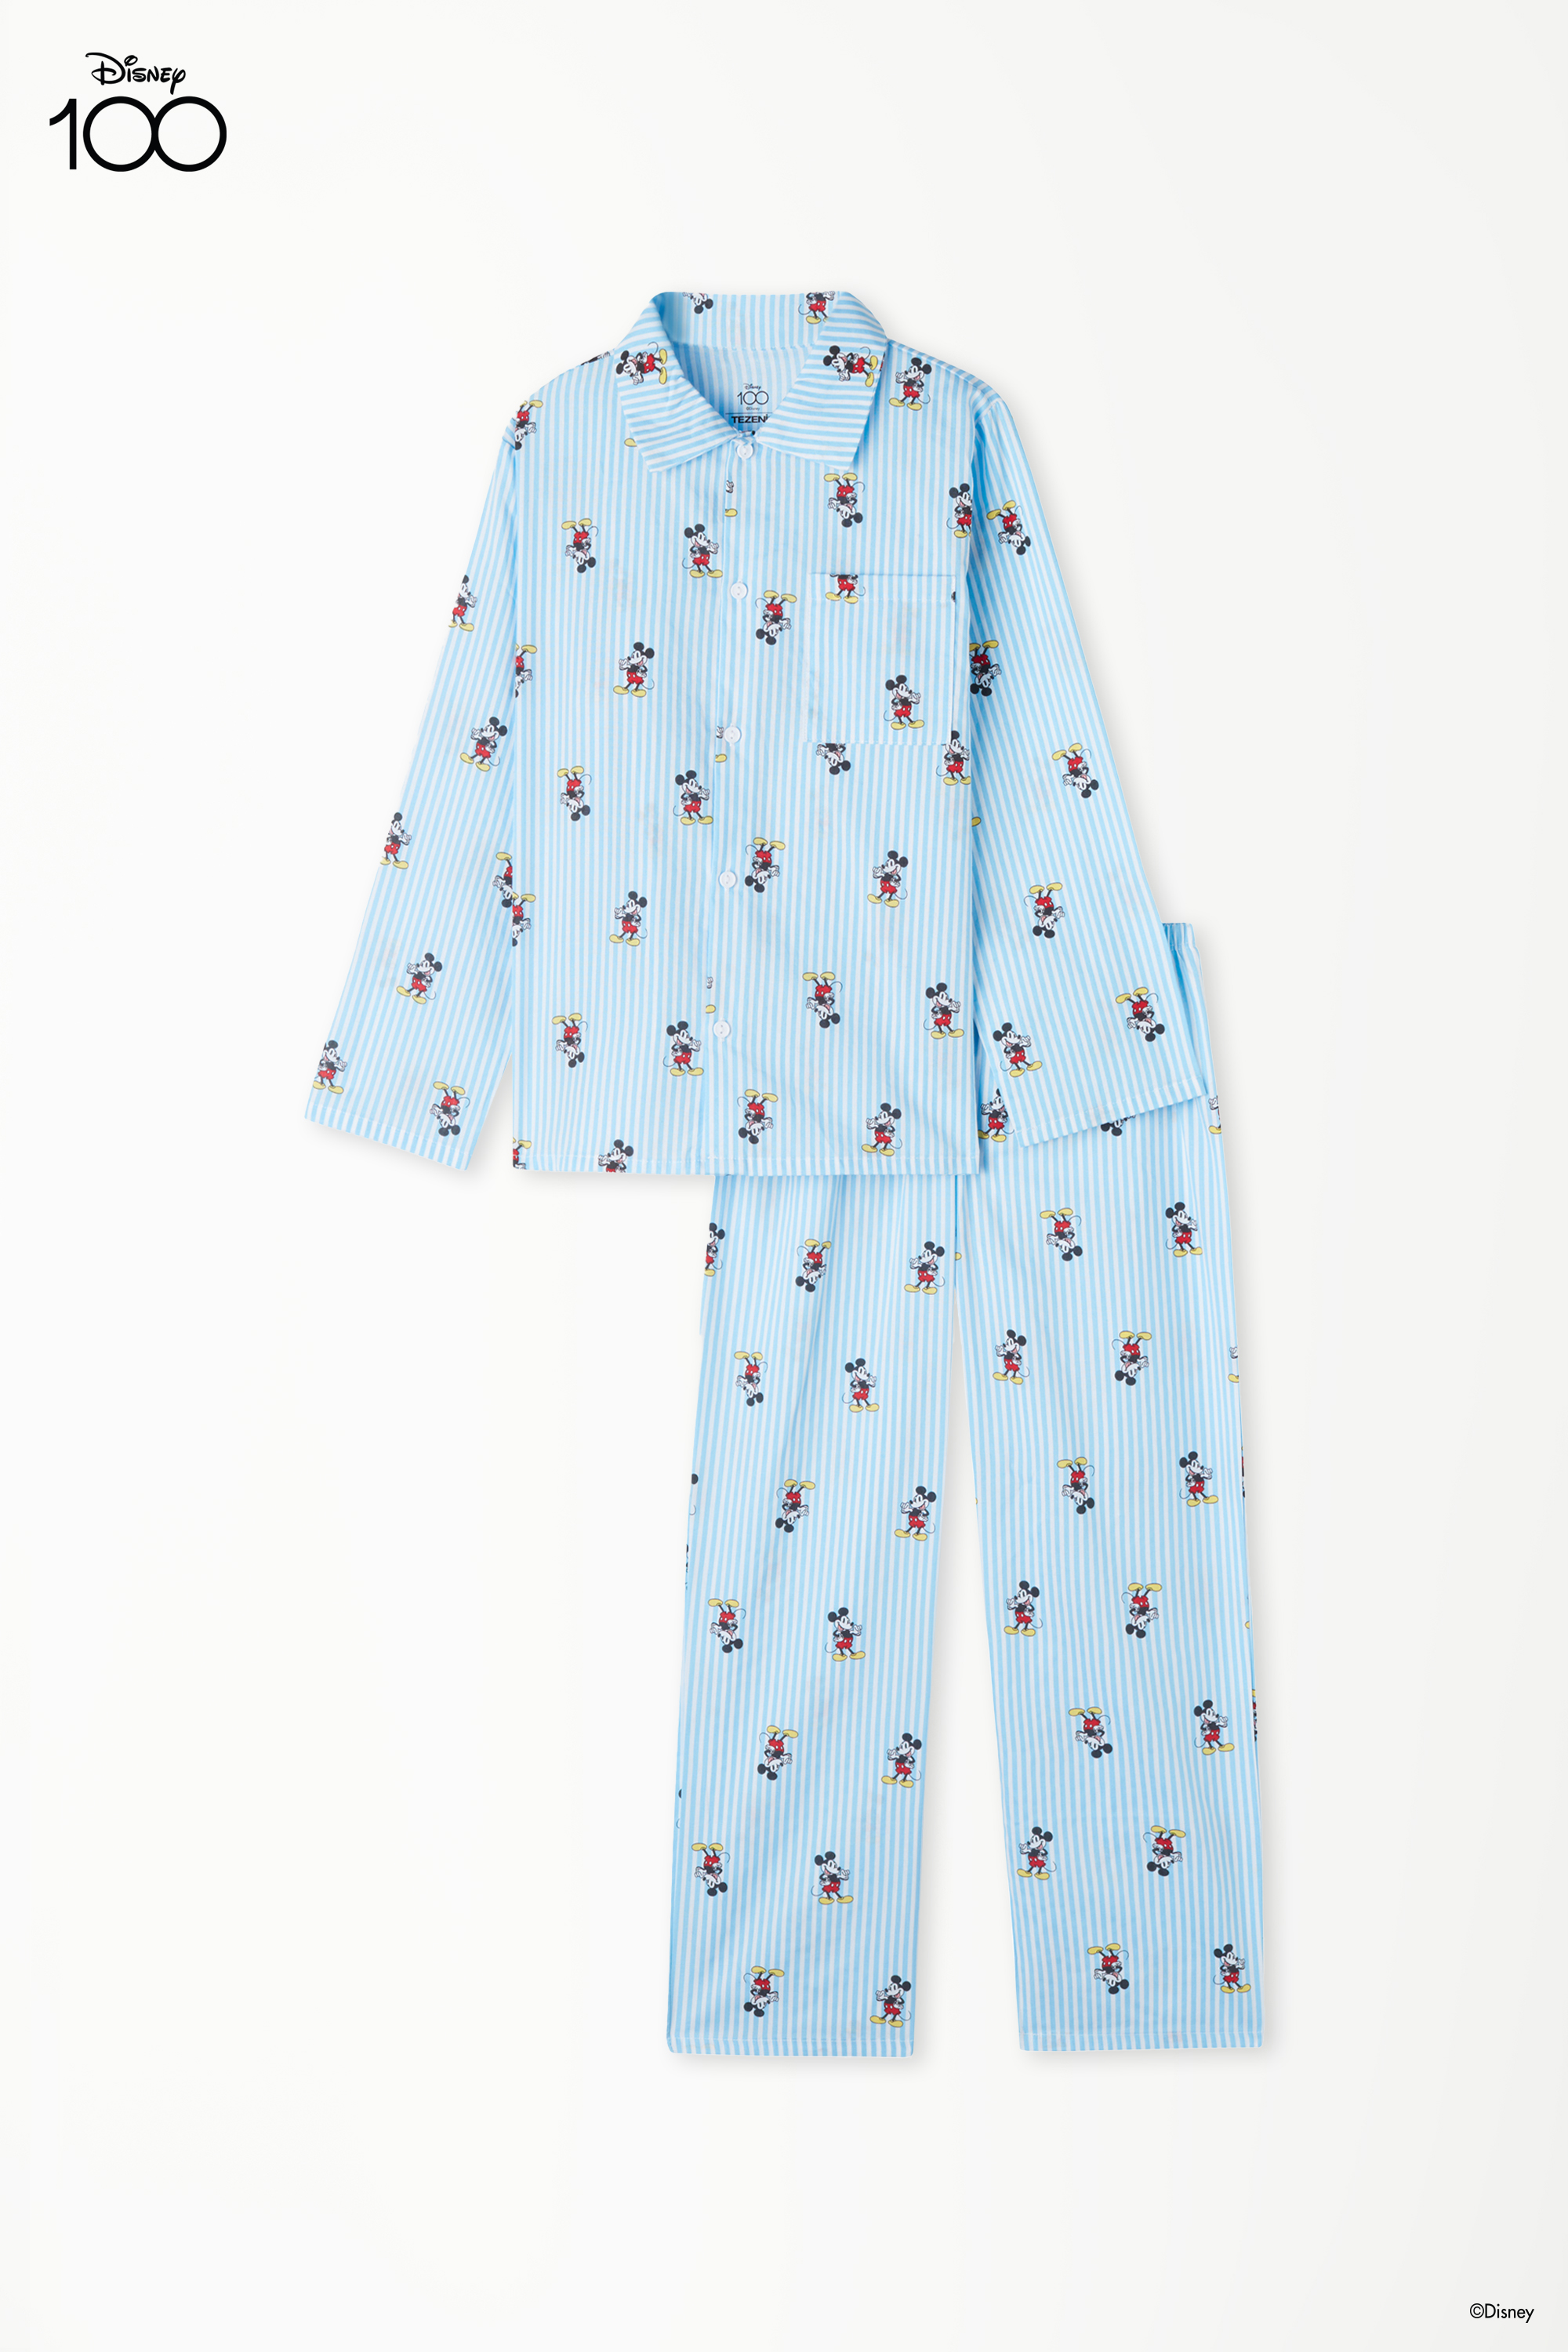 Langer Pyjama für Jungen mit Knopfleiste aus Baumwolltuch mit Disney 100-Print